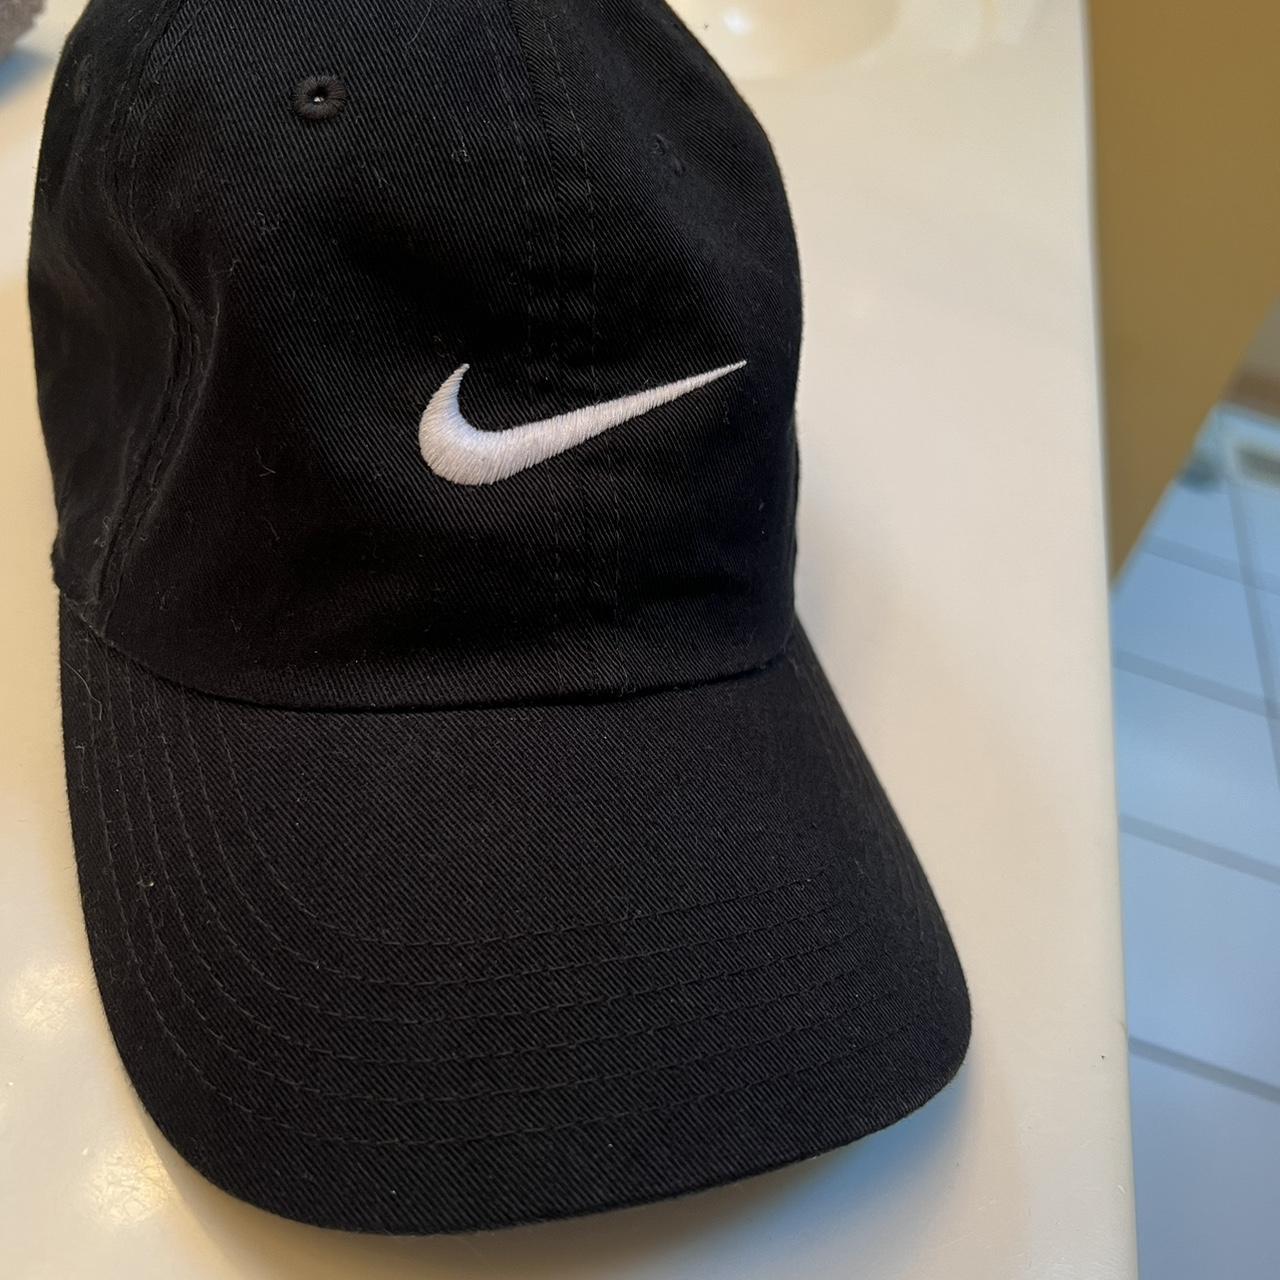 Vintage Black Nike Hat (Never Worn)... - Depop